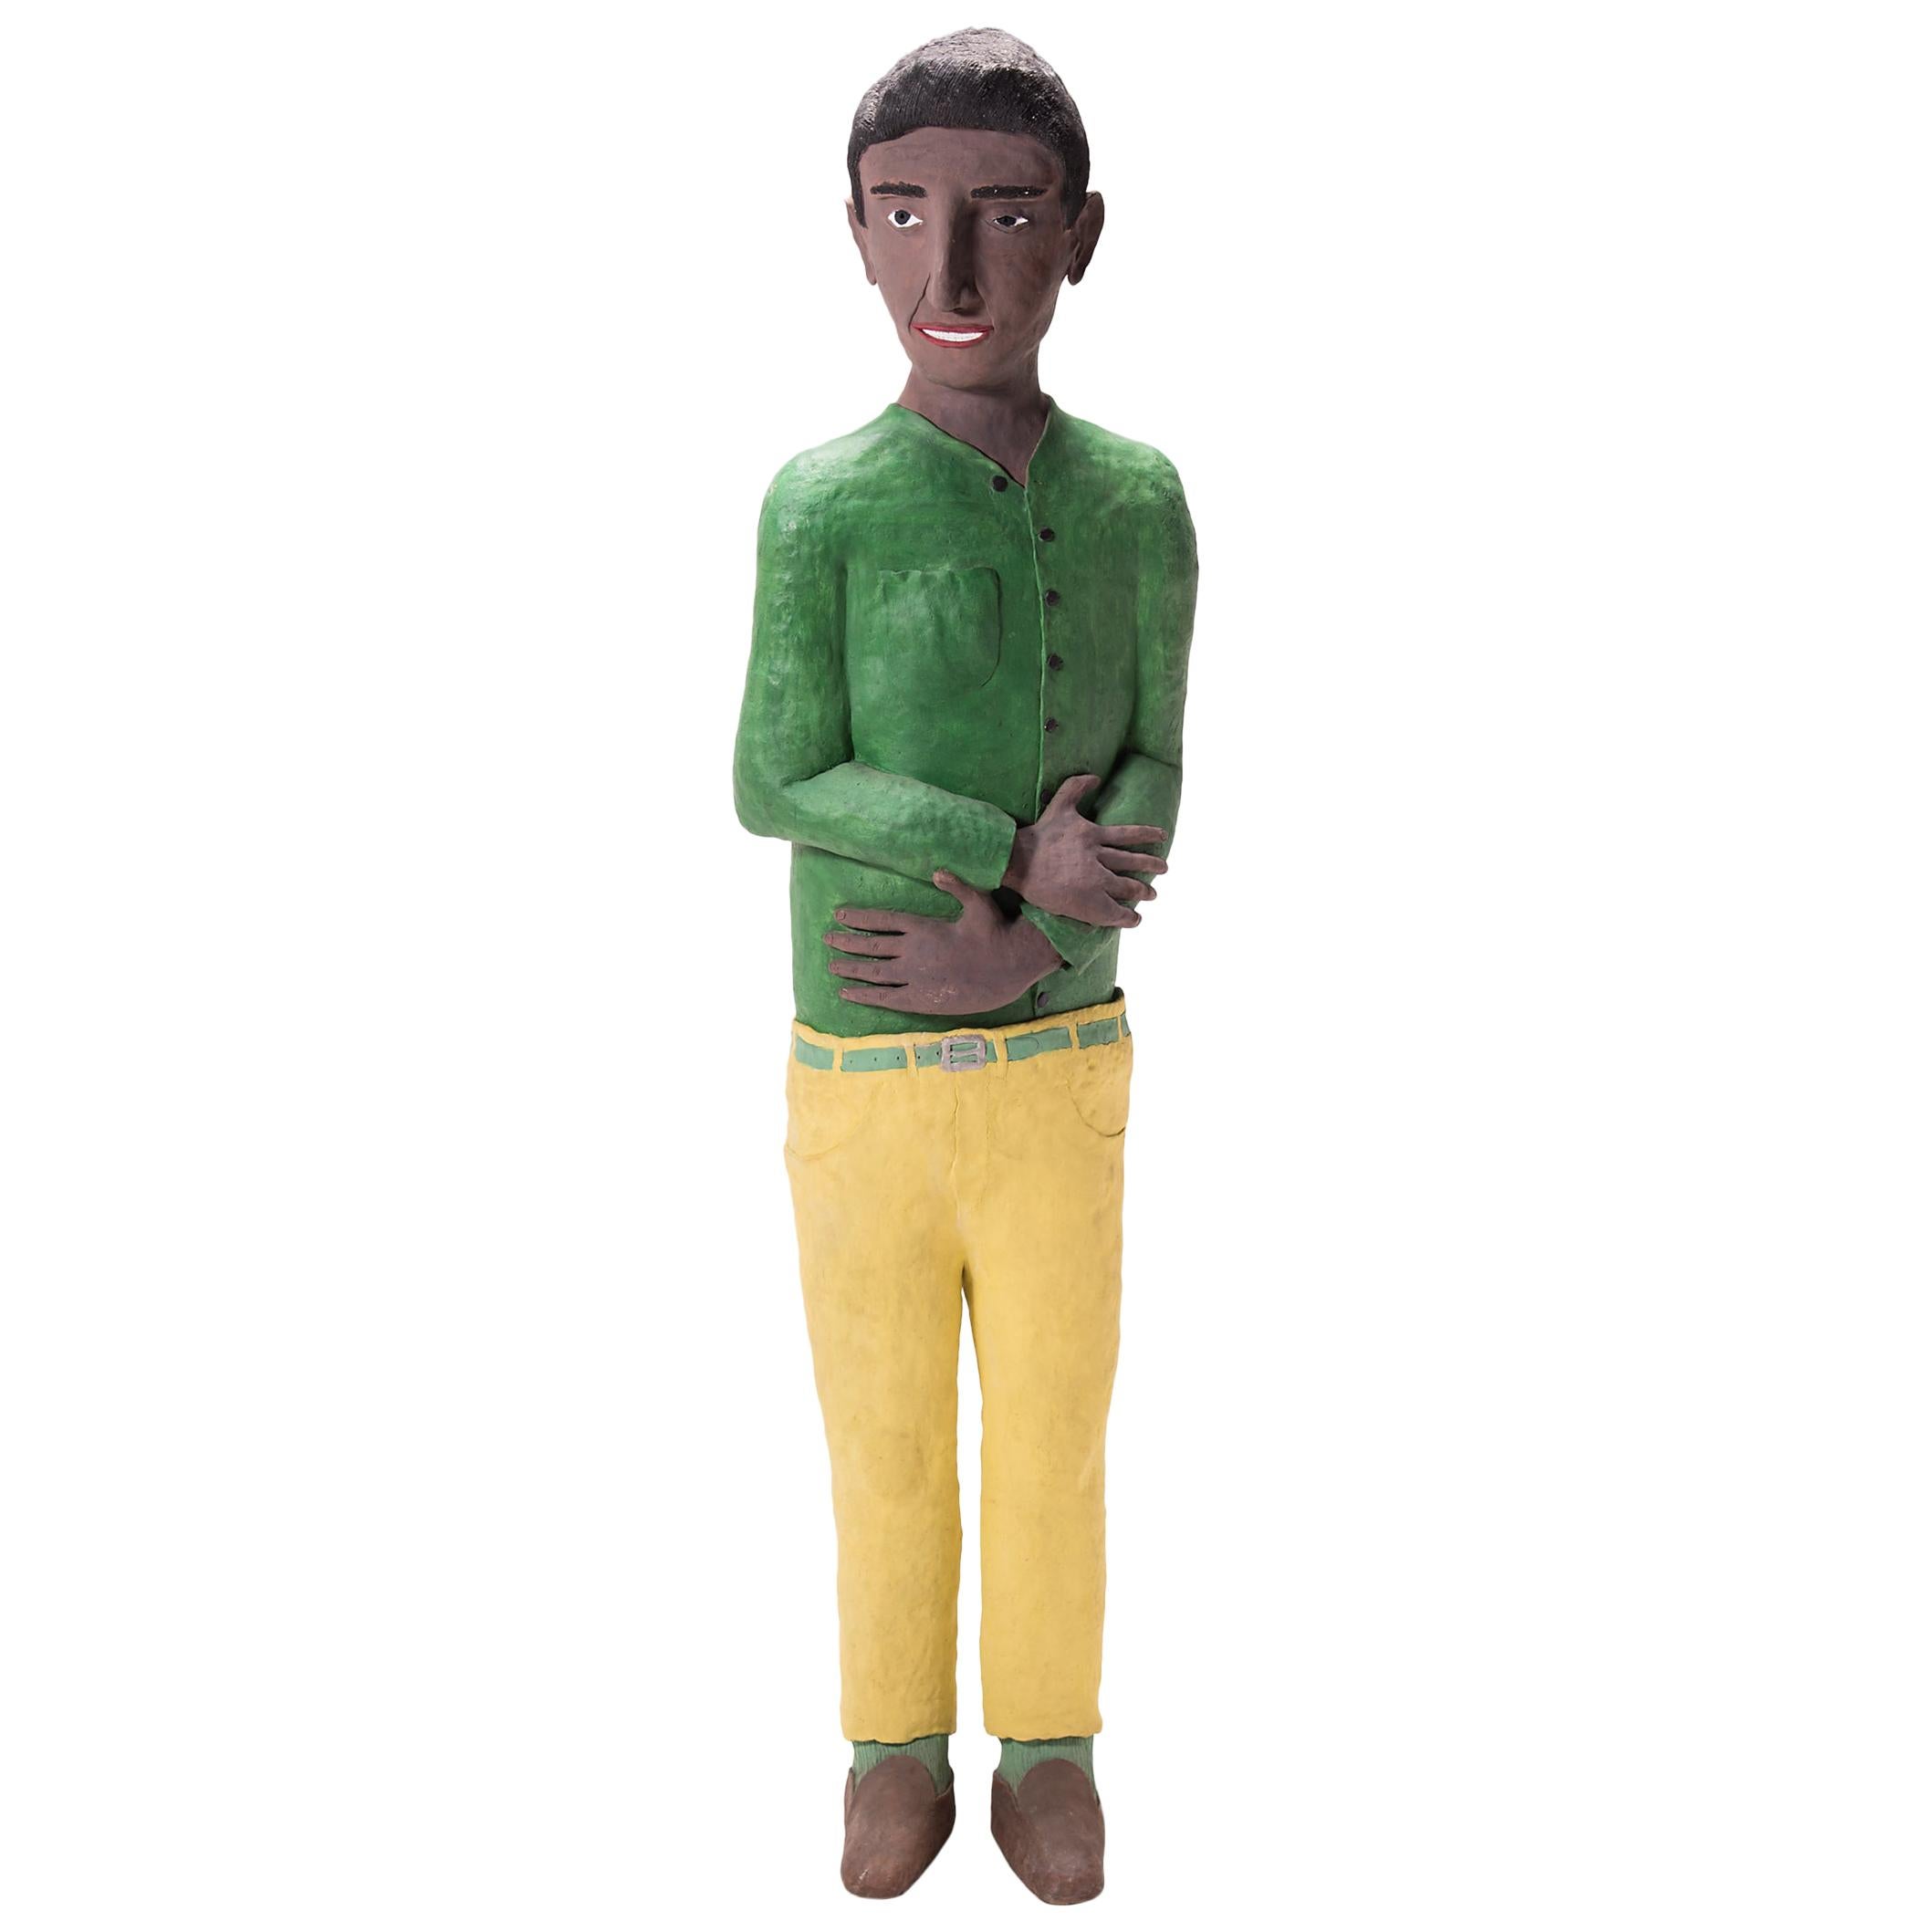 "Man in Green Shirt" by Allan Winkler